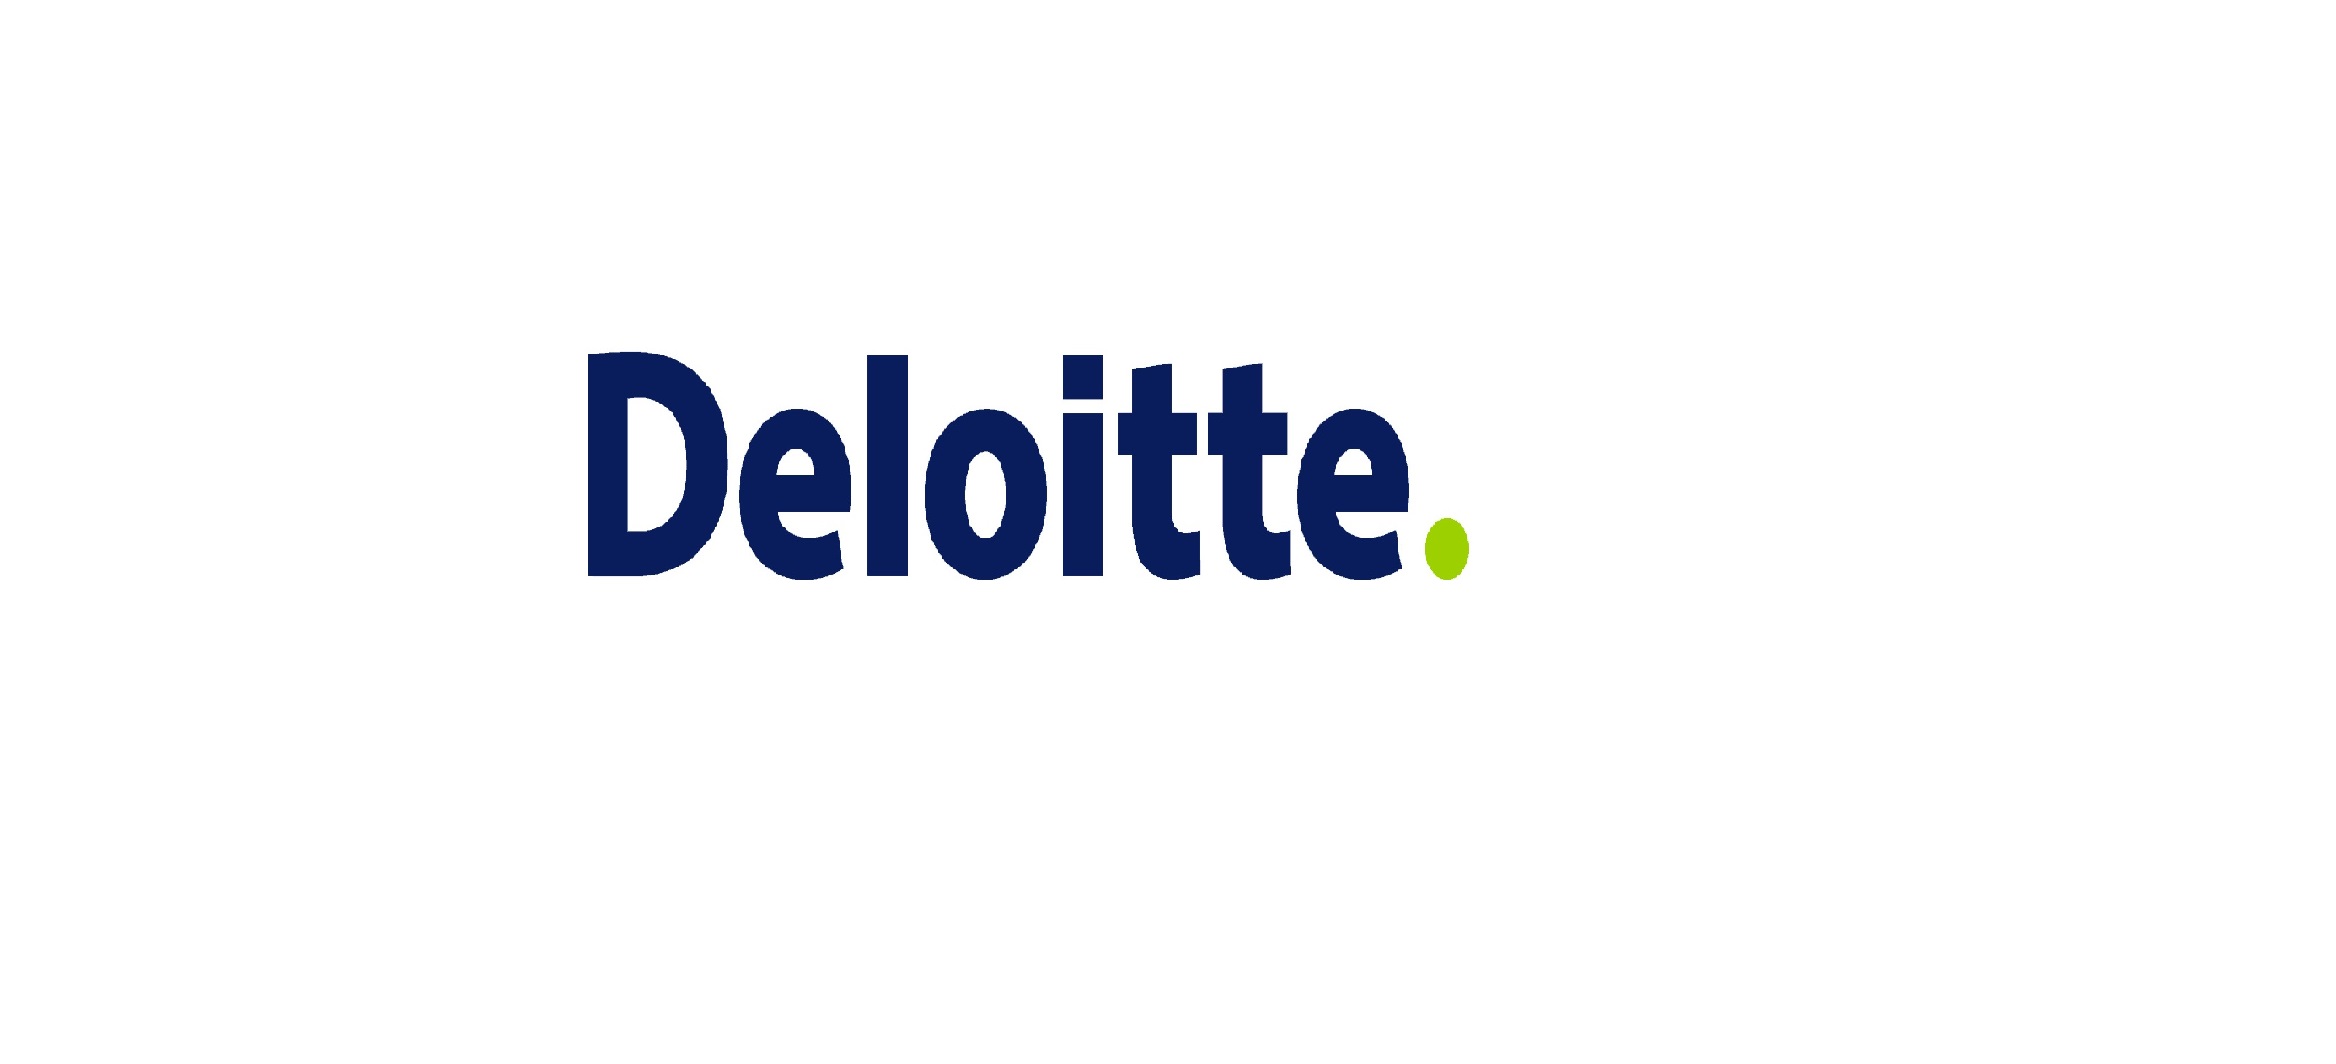 deloitte-logo-2011.jpg.